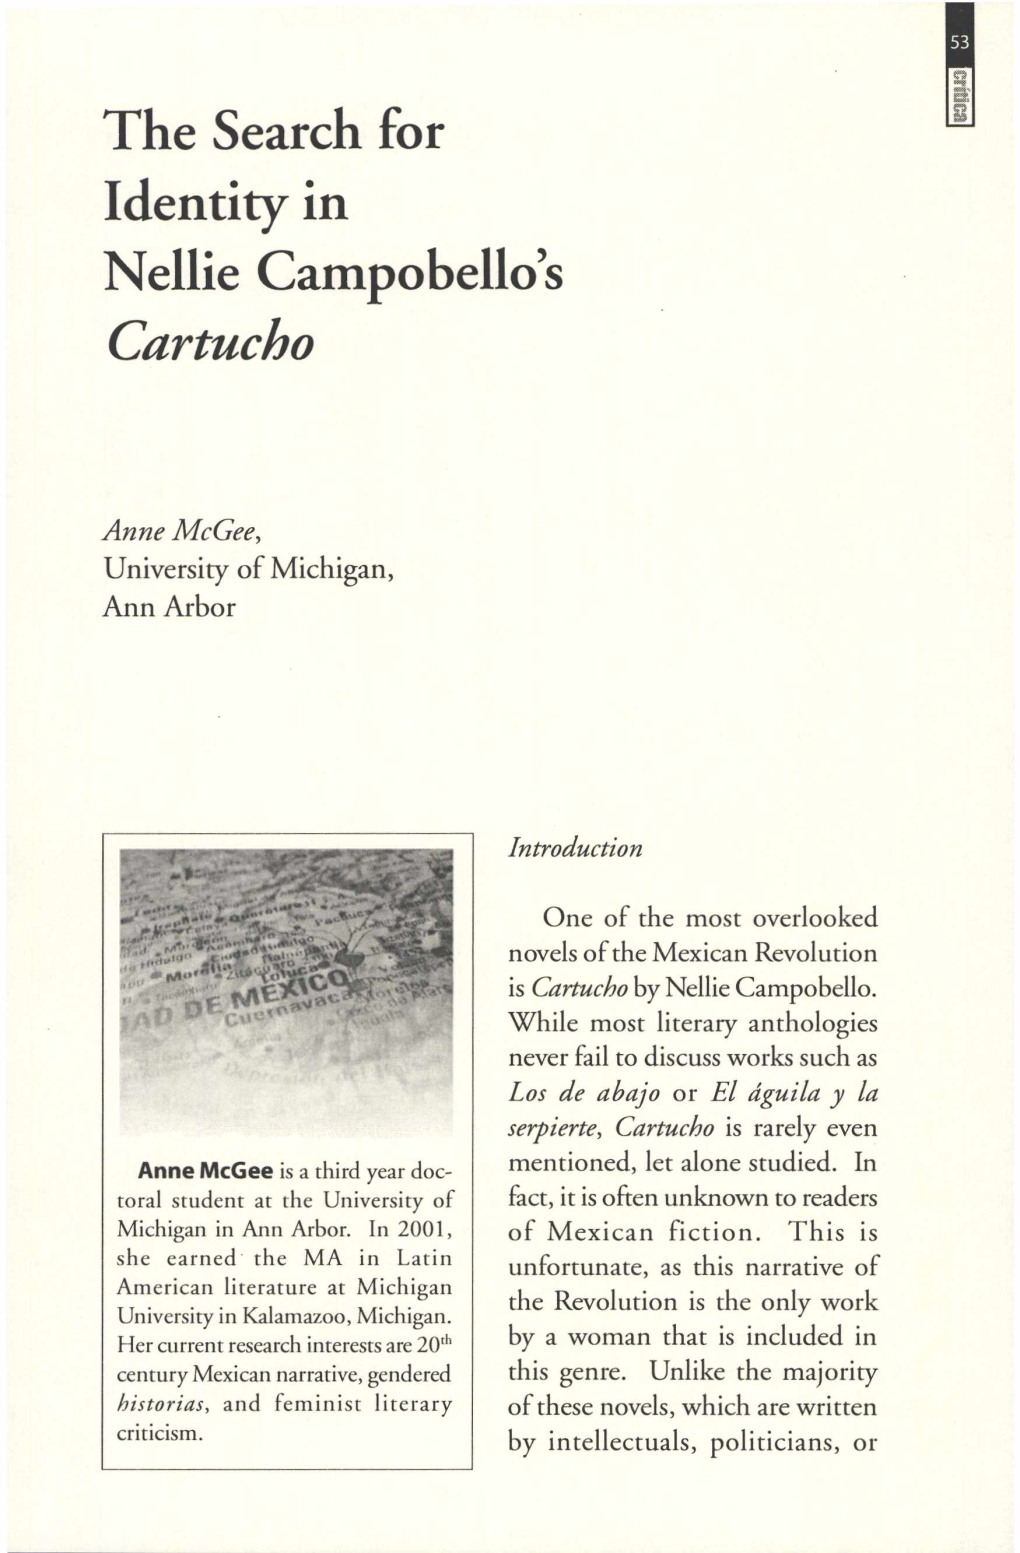 The Search for Identity in Nellie Campobellos Cartucho